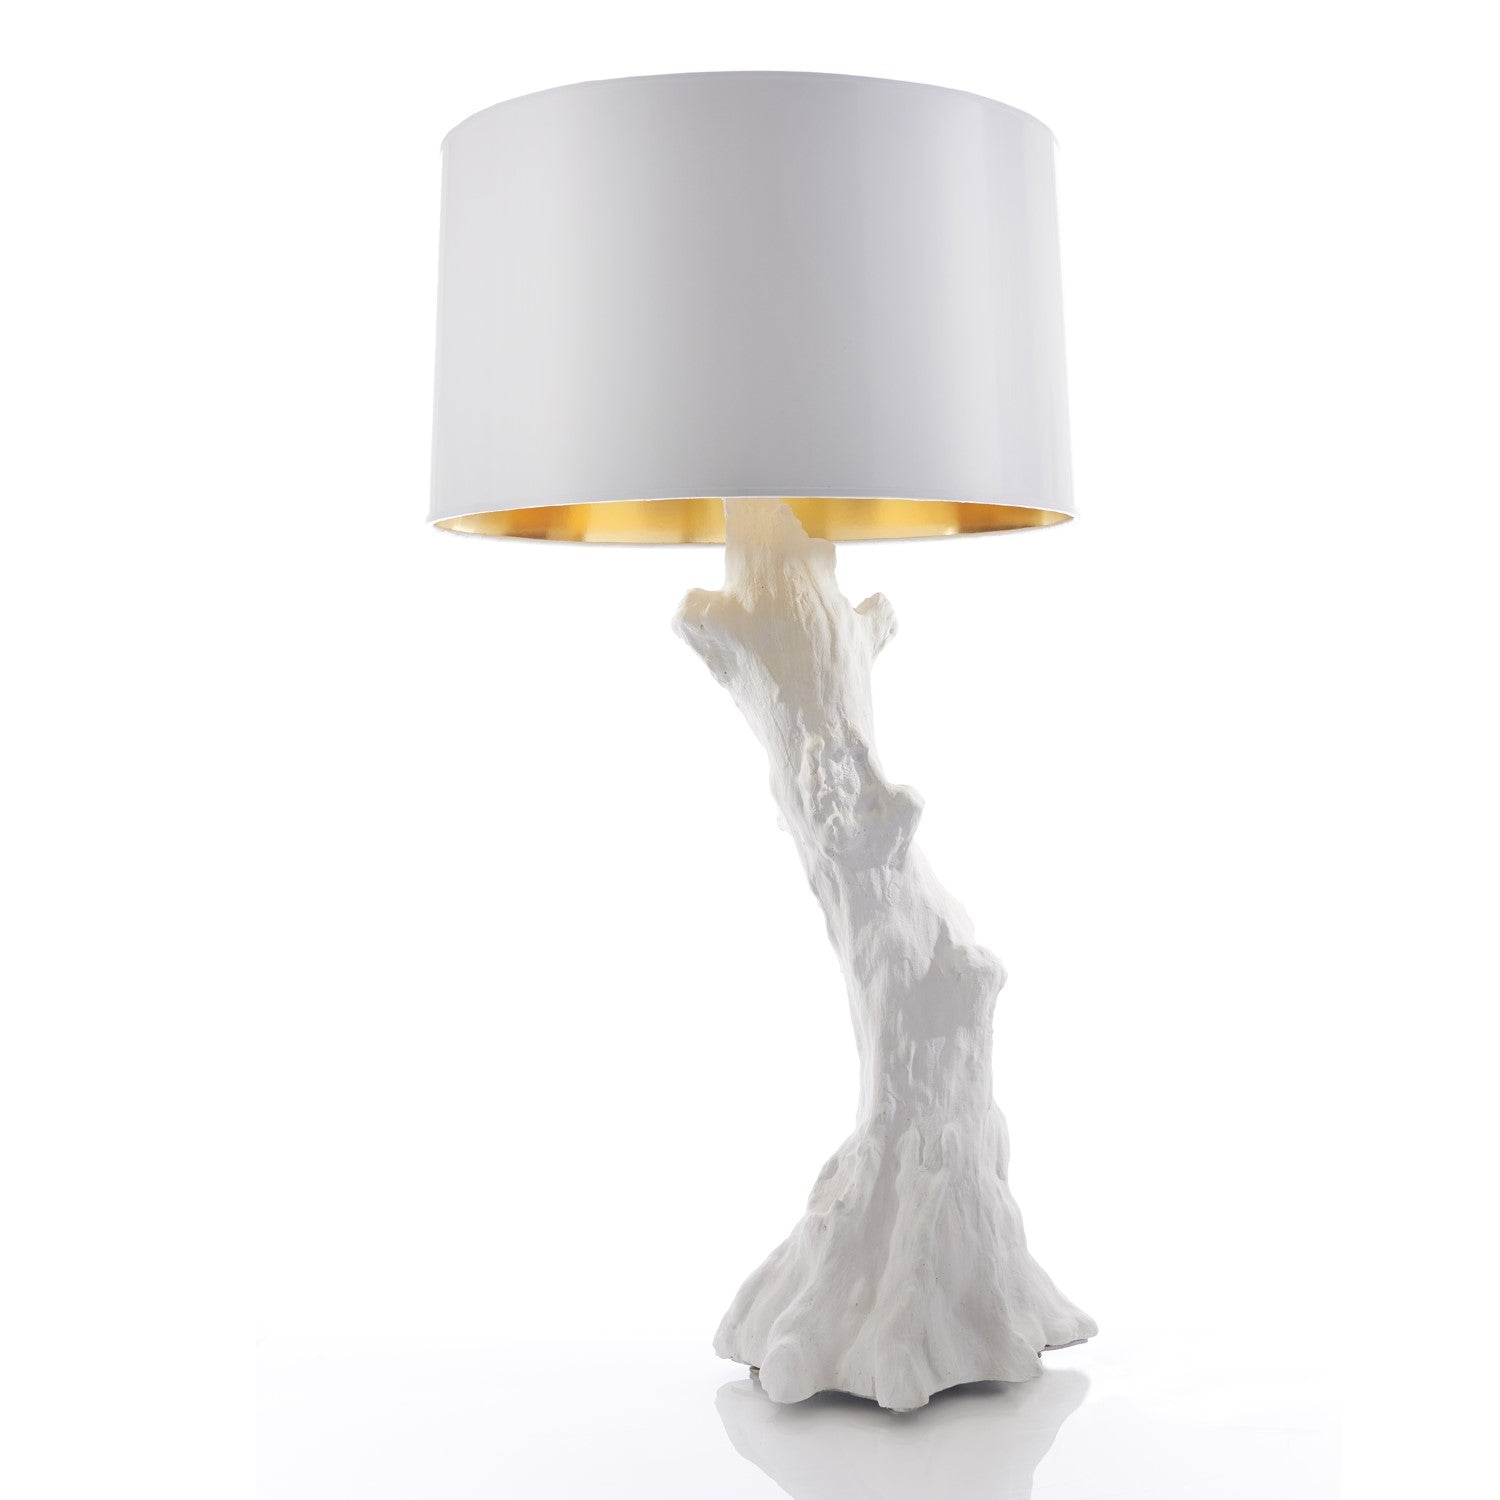 Faux Bois Table Lamp - White - Grats Decor Interior Design & Build Inc.